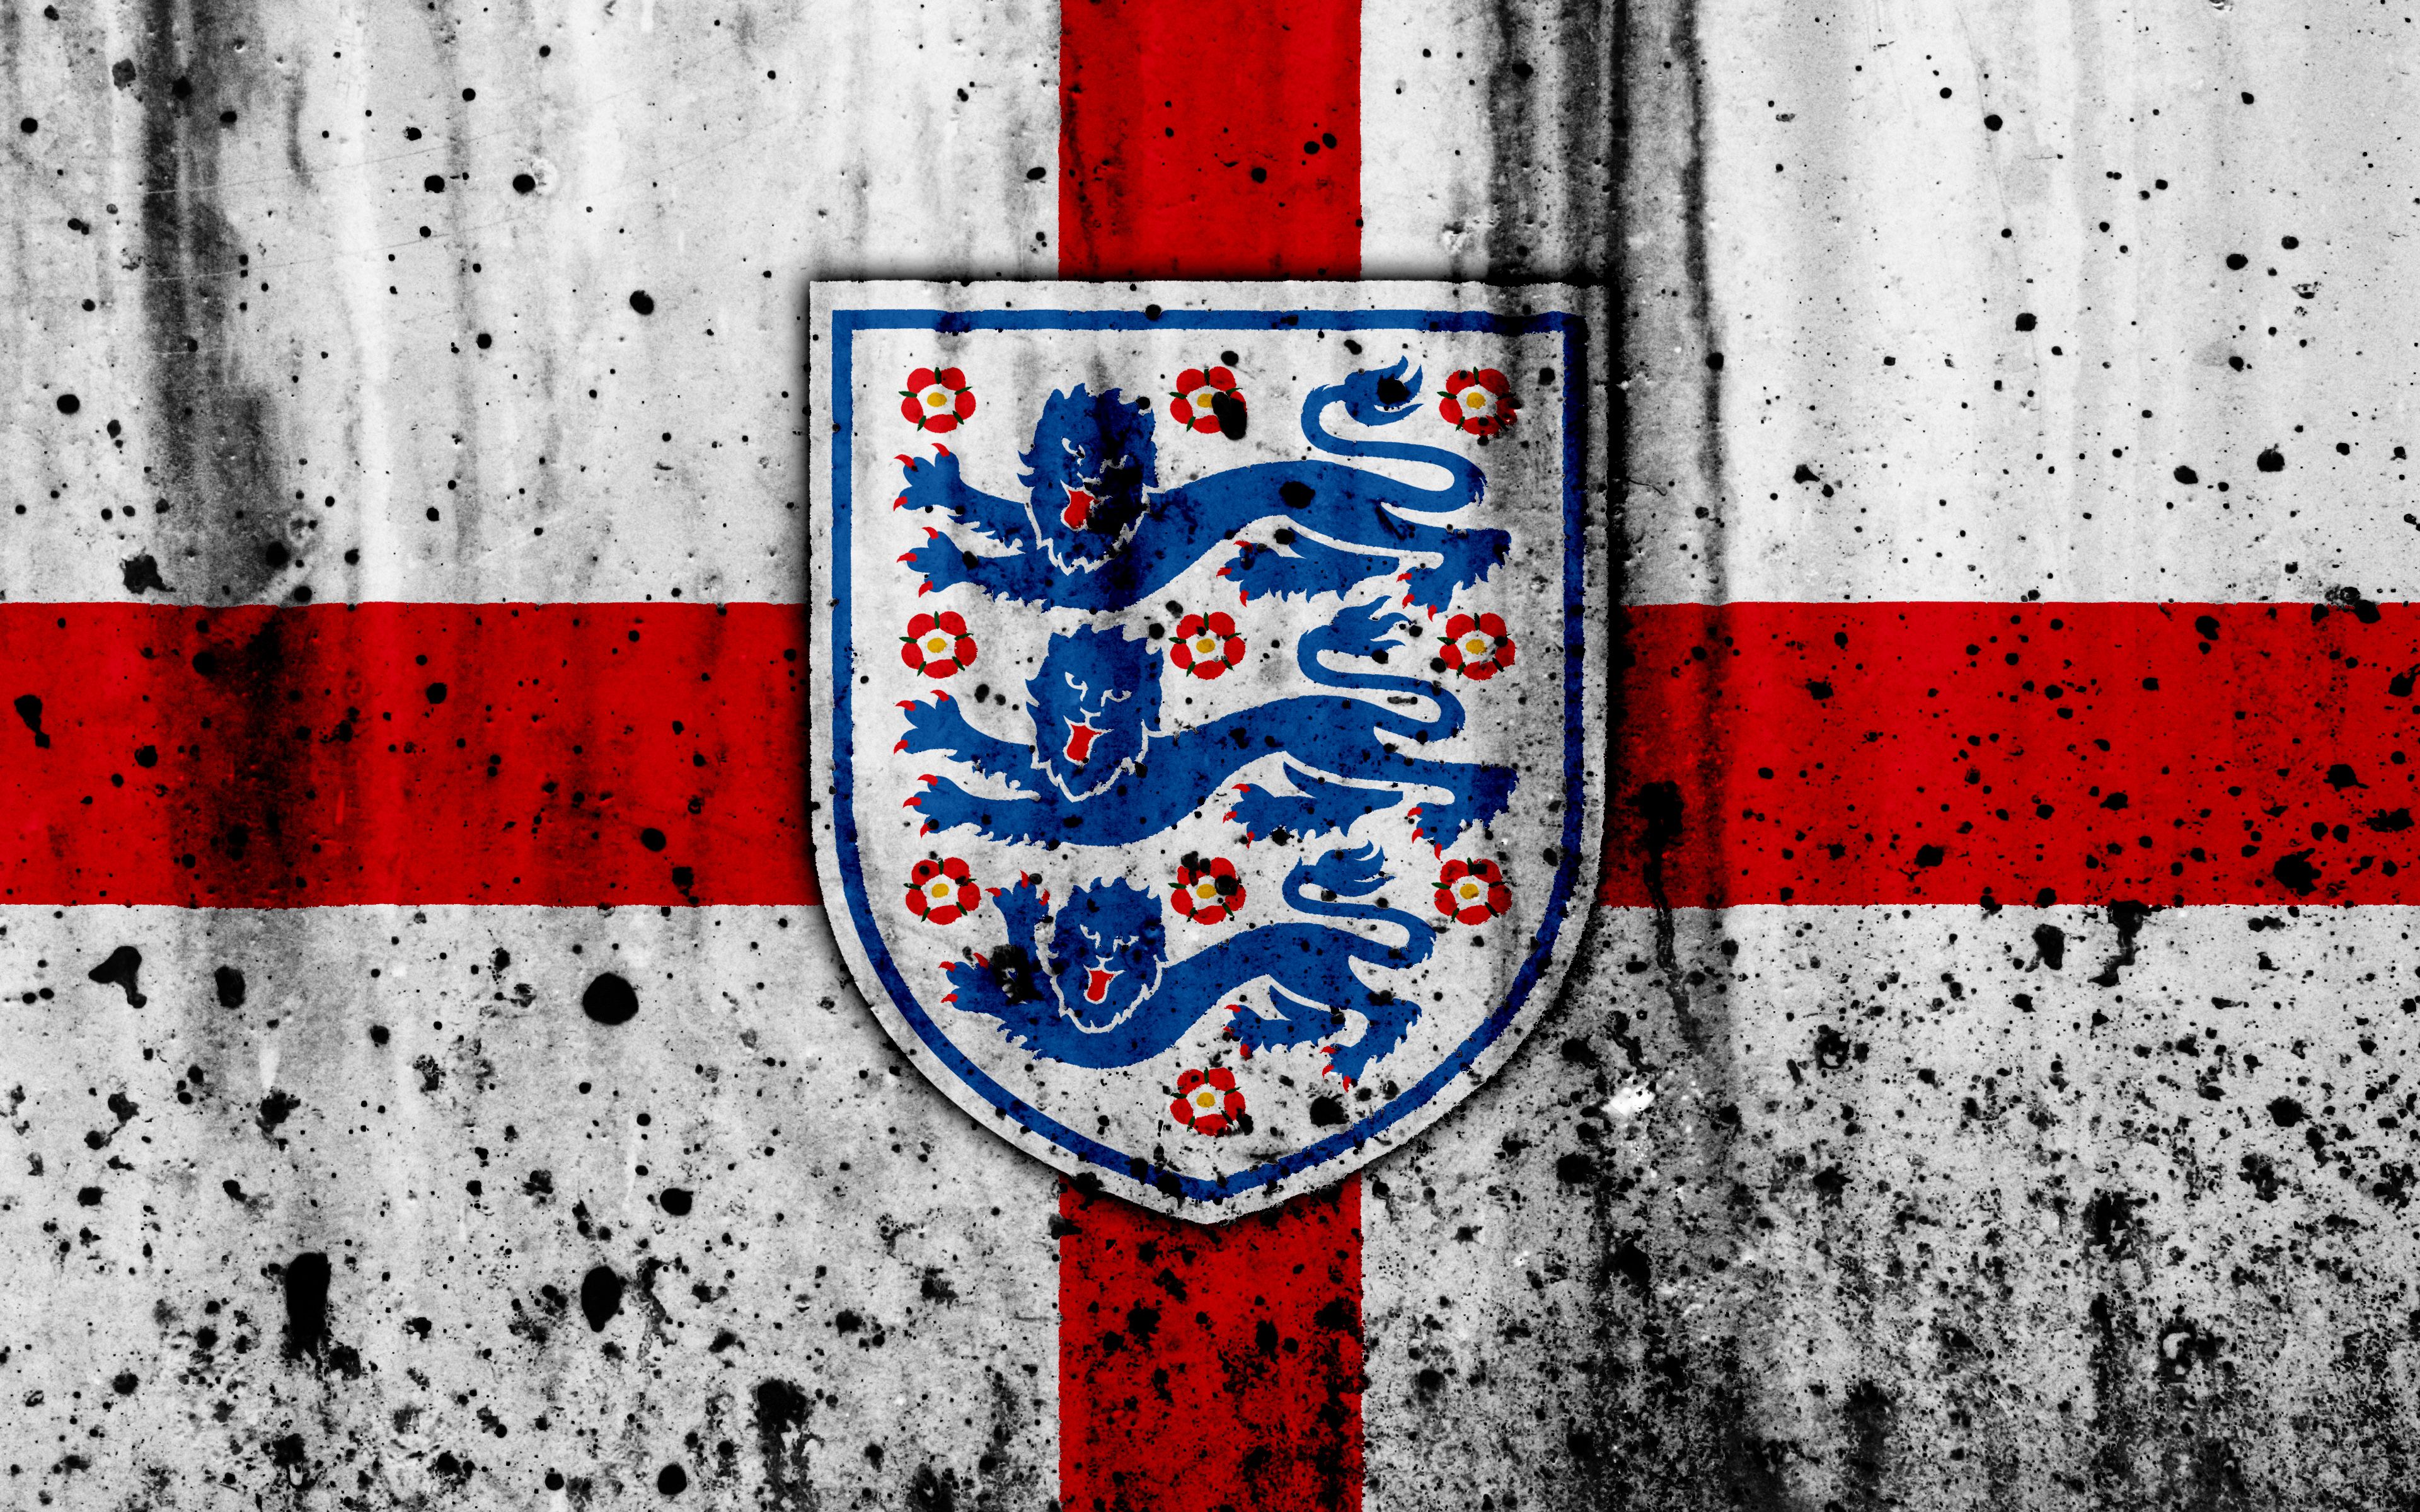 England National Football Team 4k Ultra HD Wallpaper